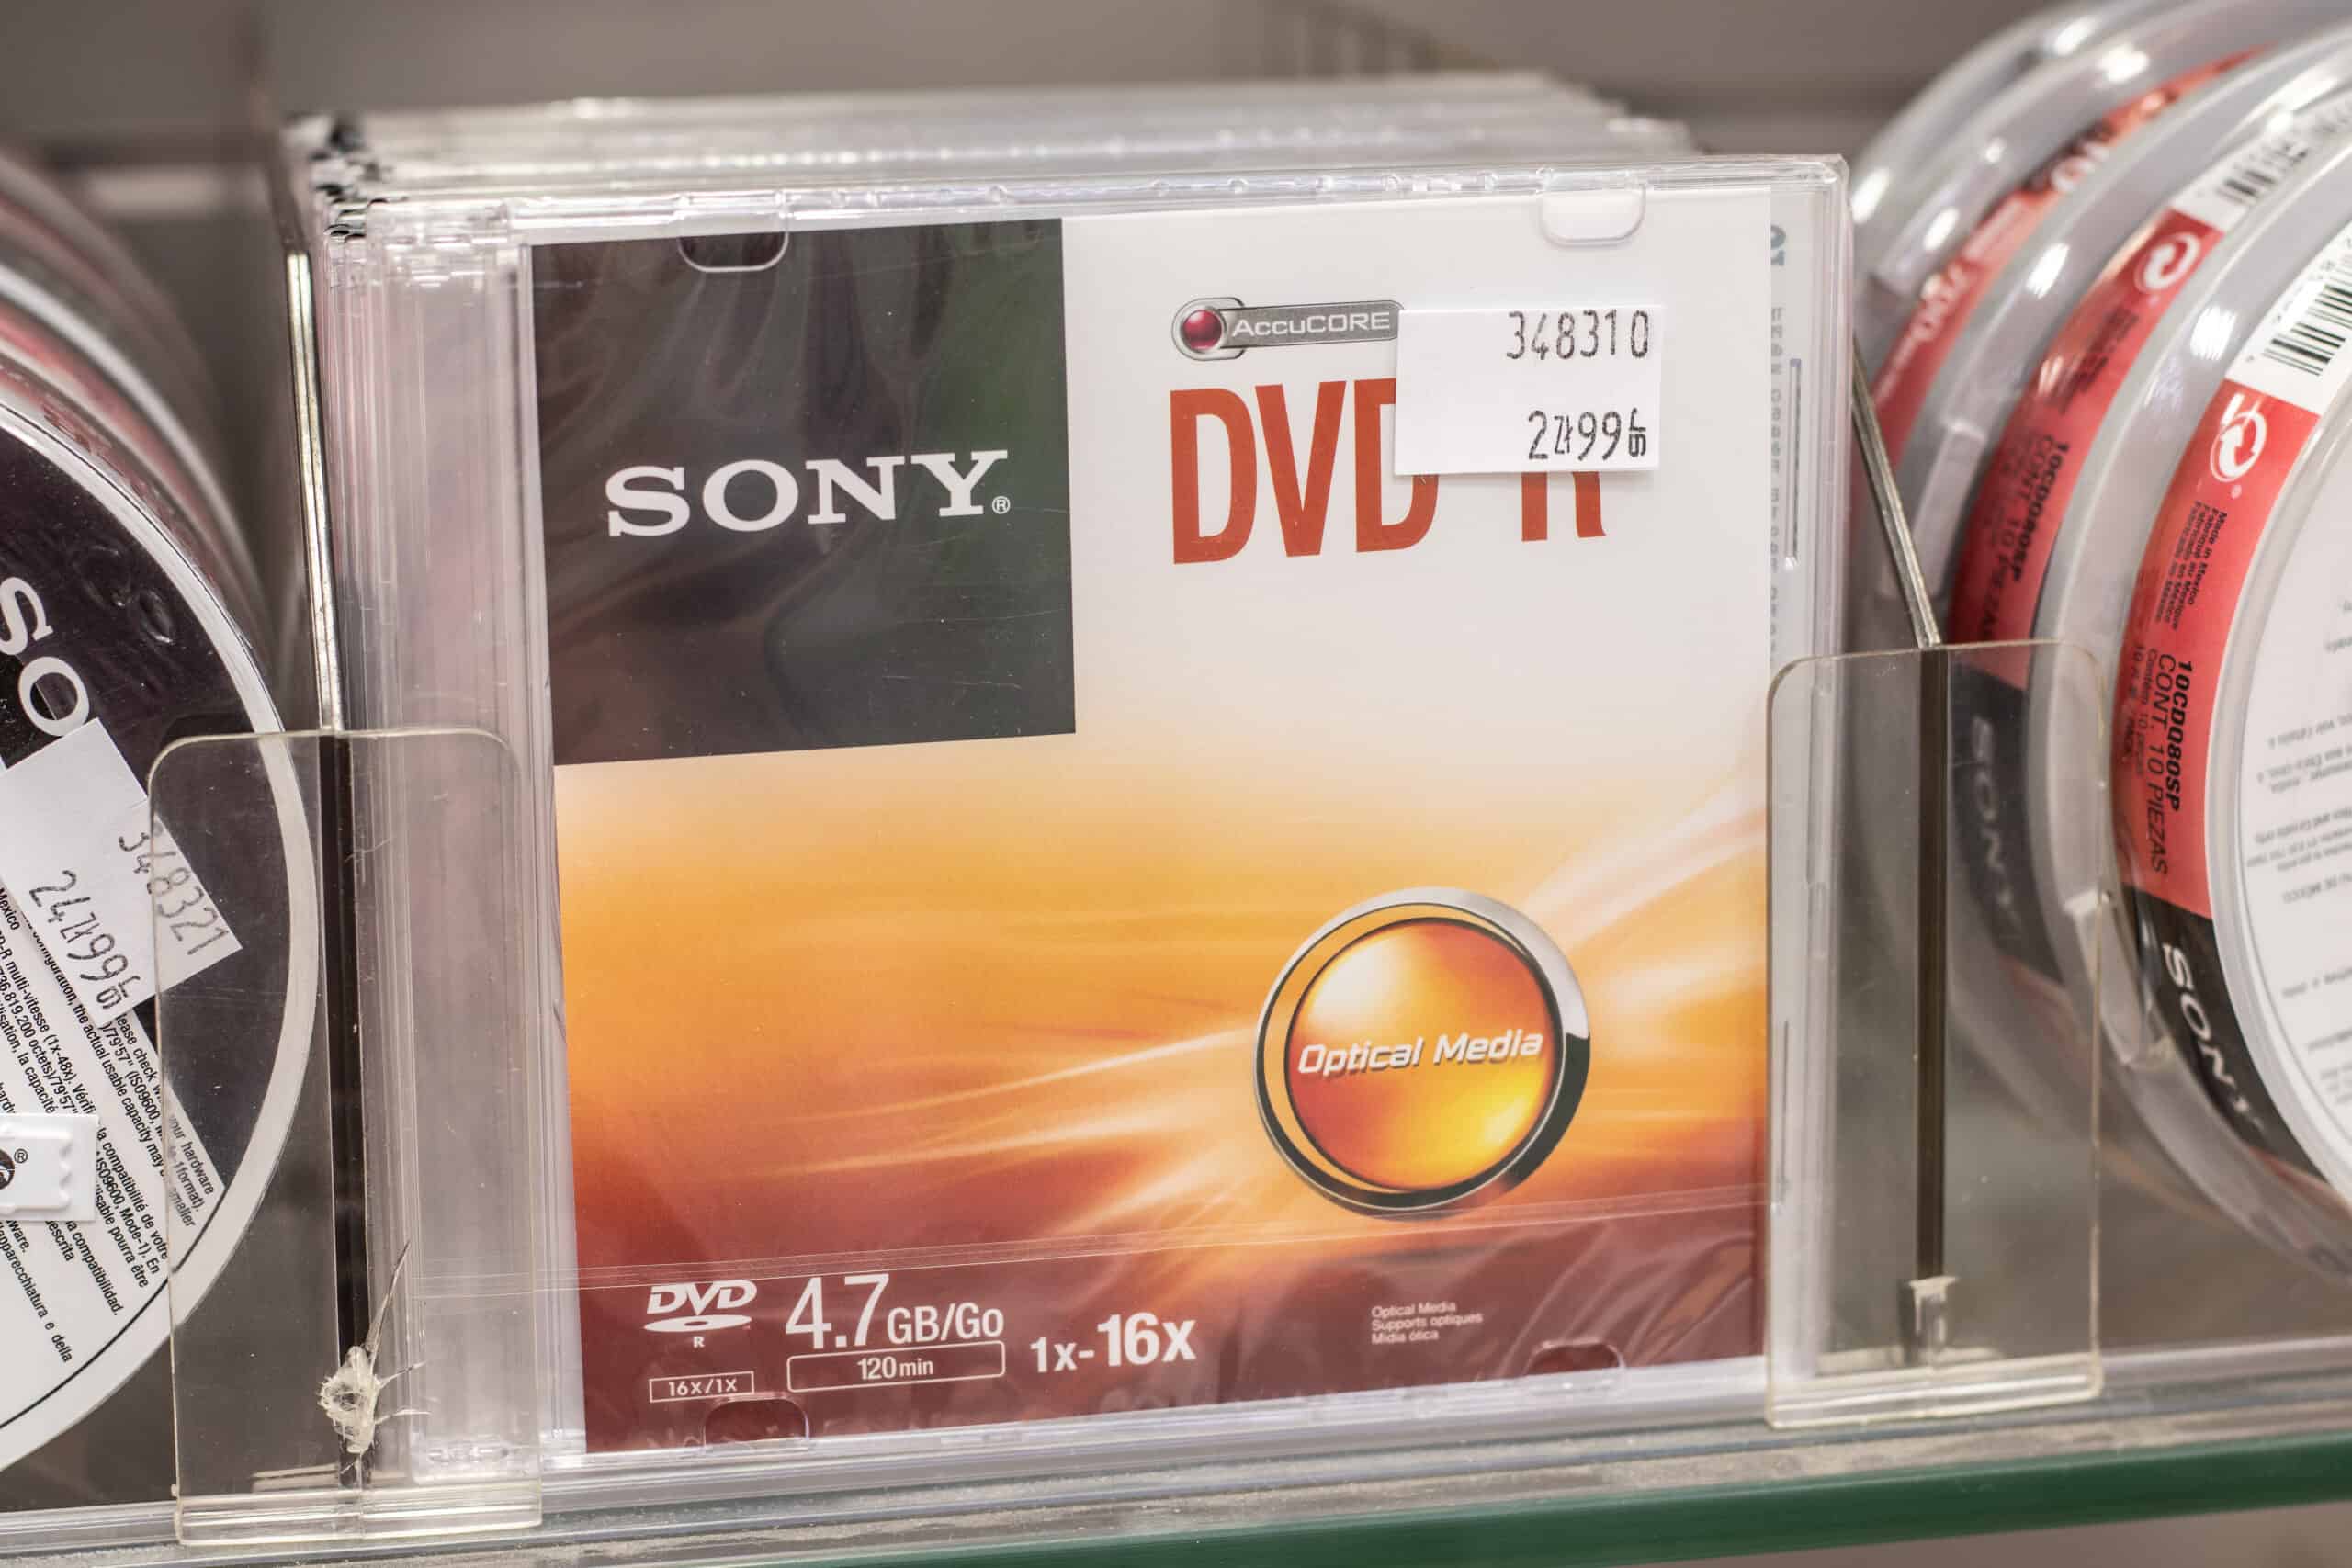 Sony DVD-R DVD format